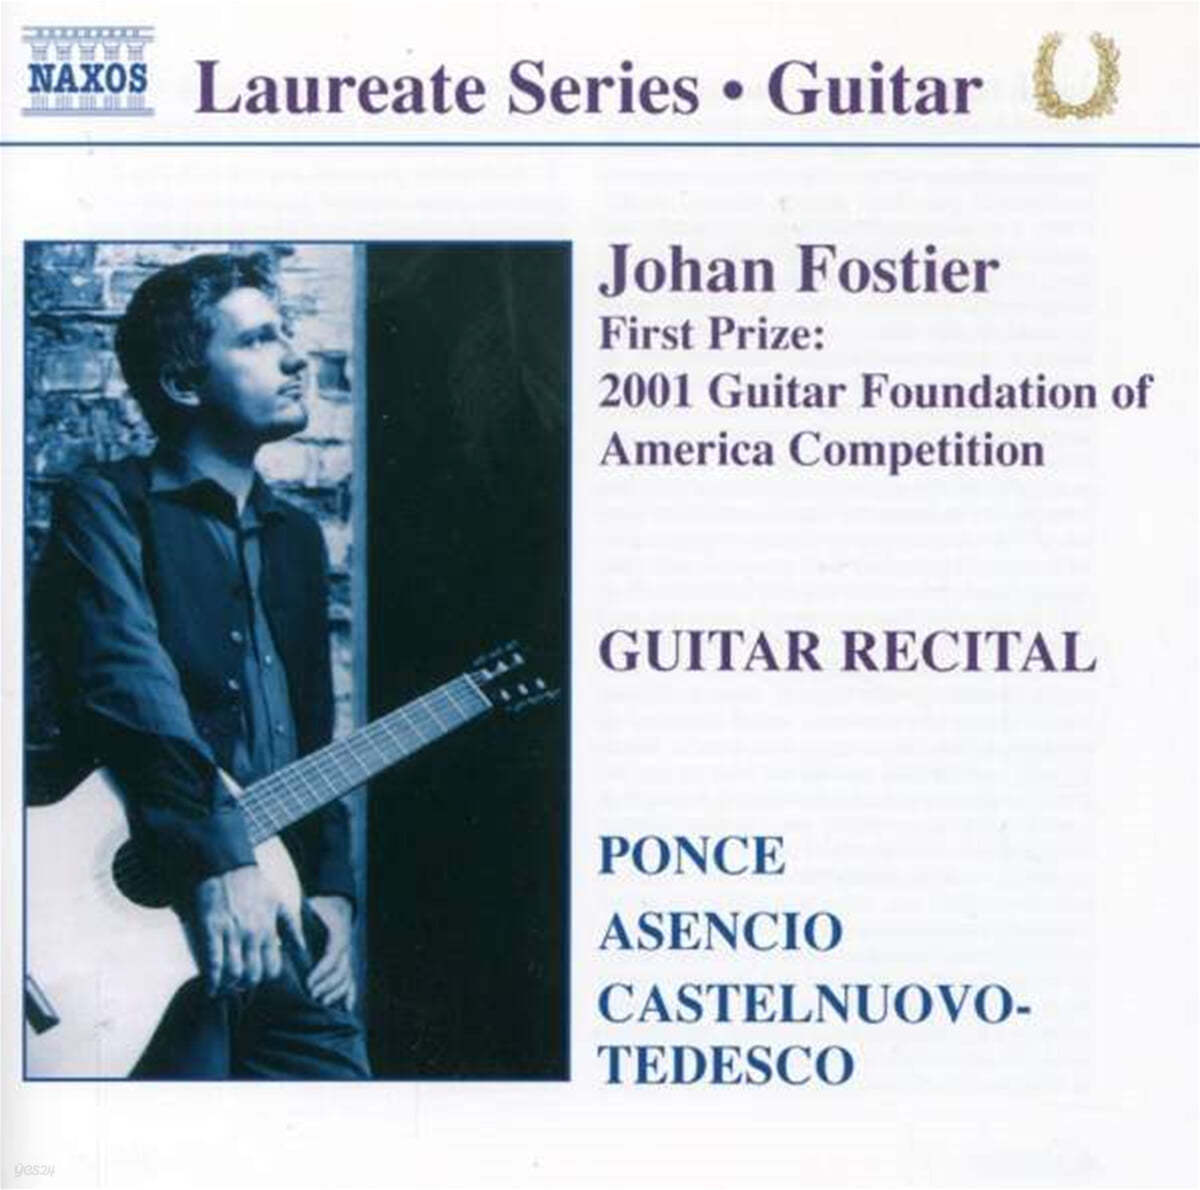 요한 포스티에르 - 기타 리사이틀 (Johan Fostier - Guitar Recital) 